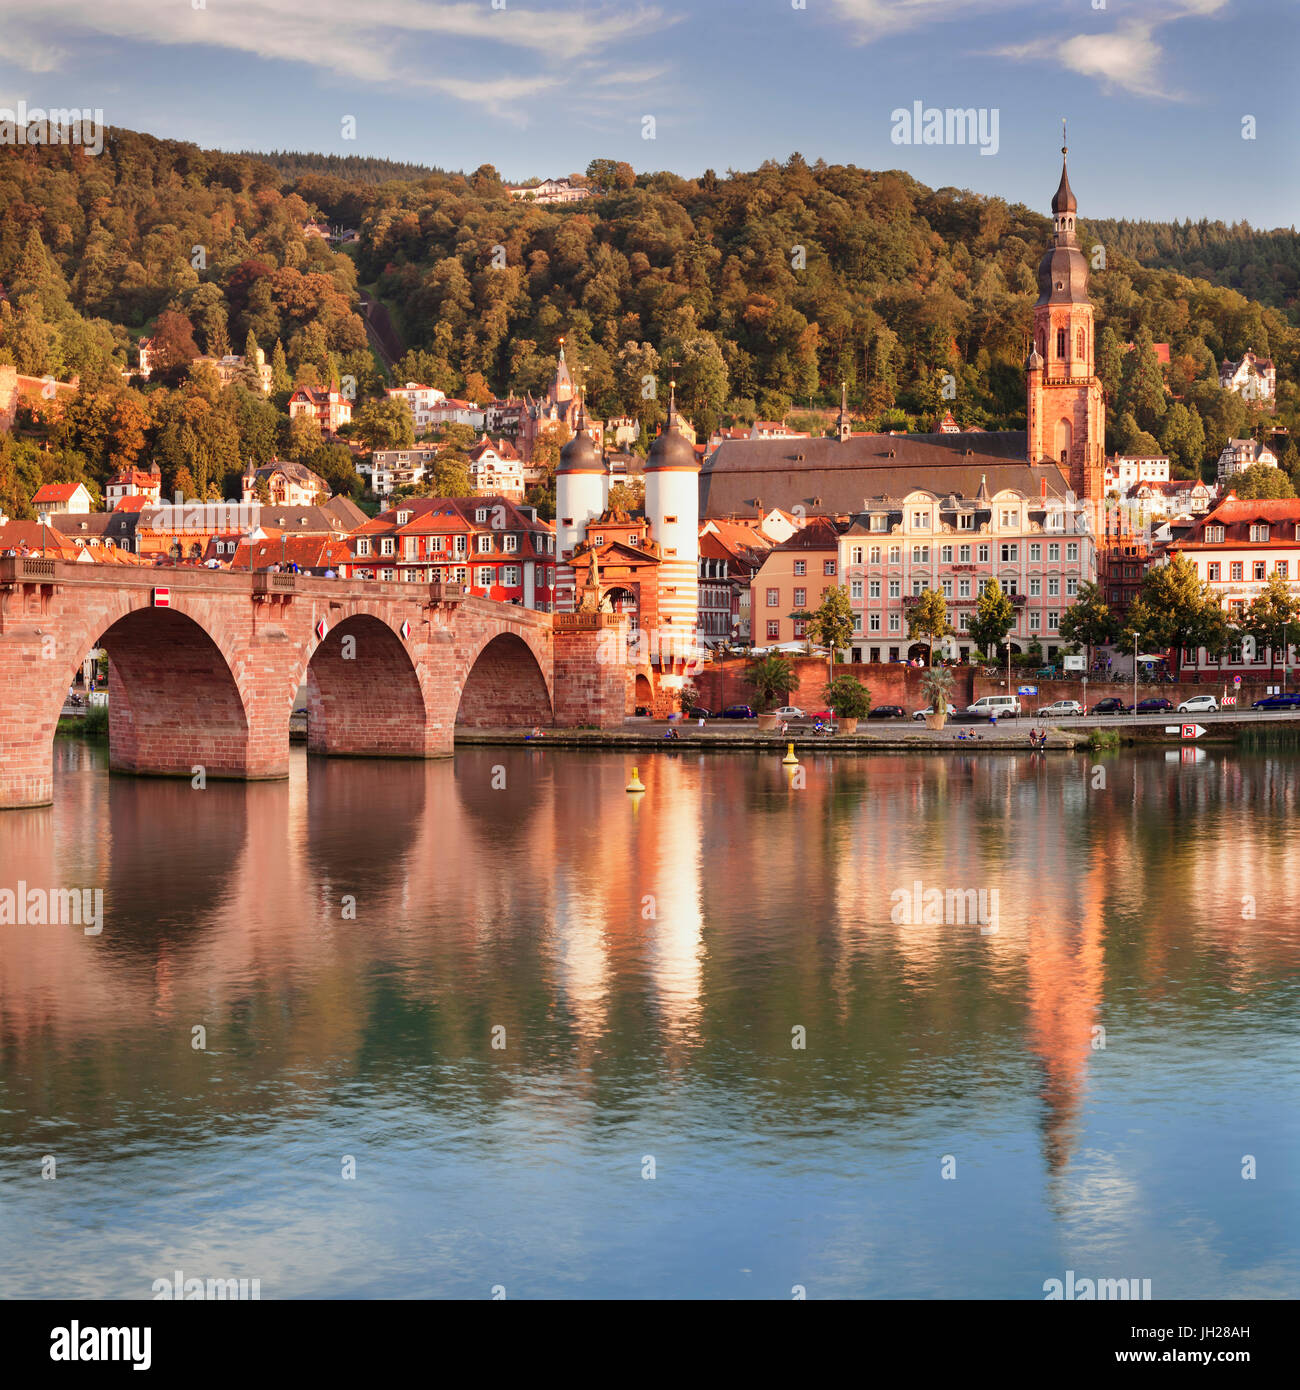 Vieille Ville avec Karl-Theodor-pont (Vieux Pont) et le château, du Neckar, Heidelberg, Germany, Europe Banque D'Images